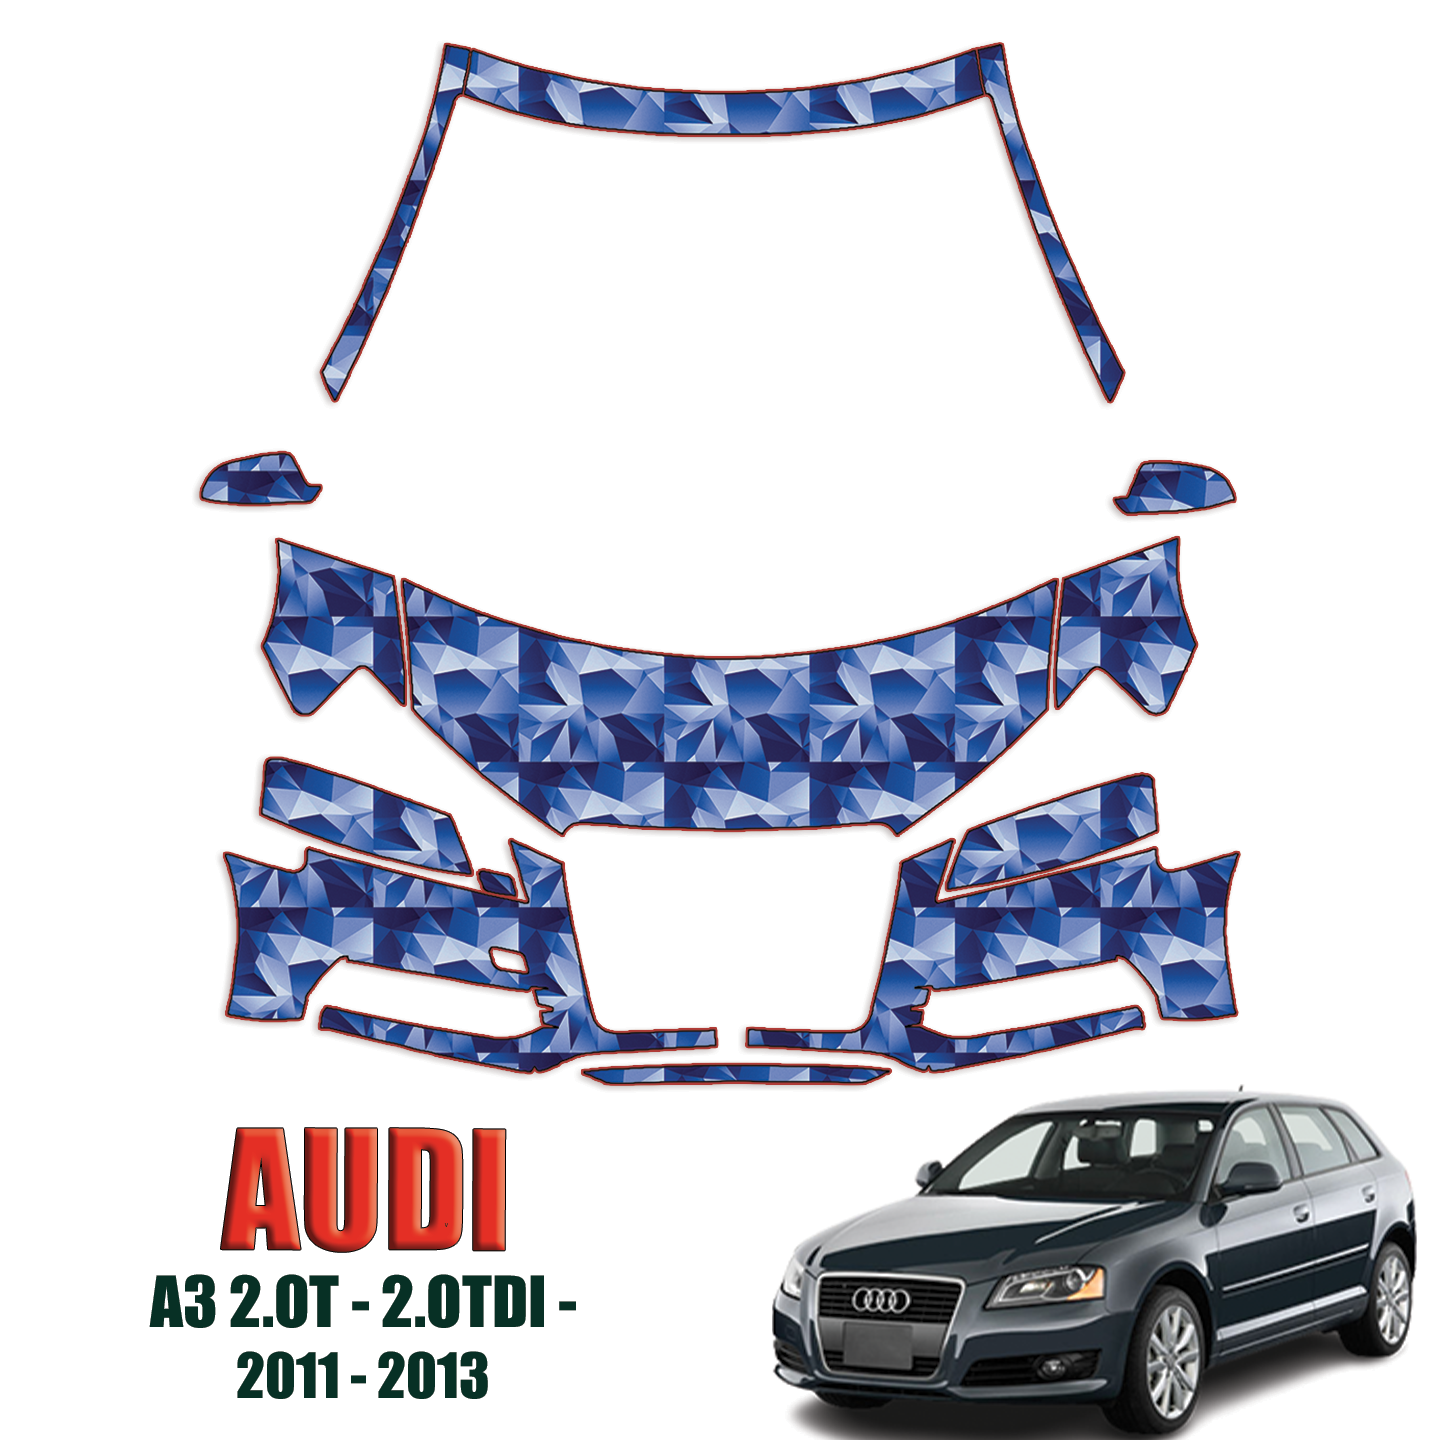 2011-2013 Audi A3 Precut Paint Protection PPF Kit – Partial Front+